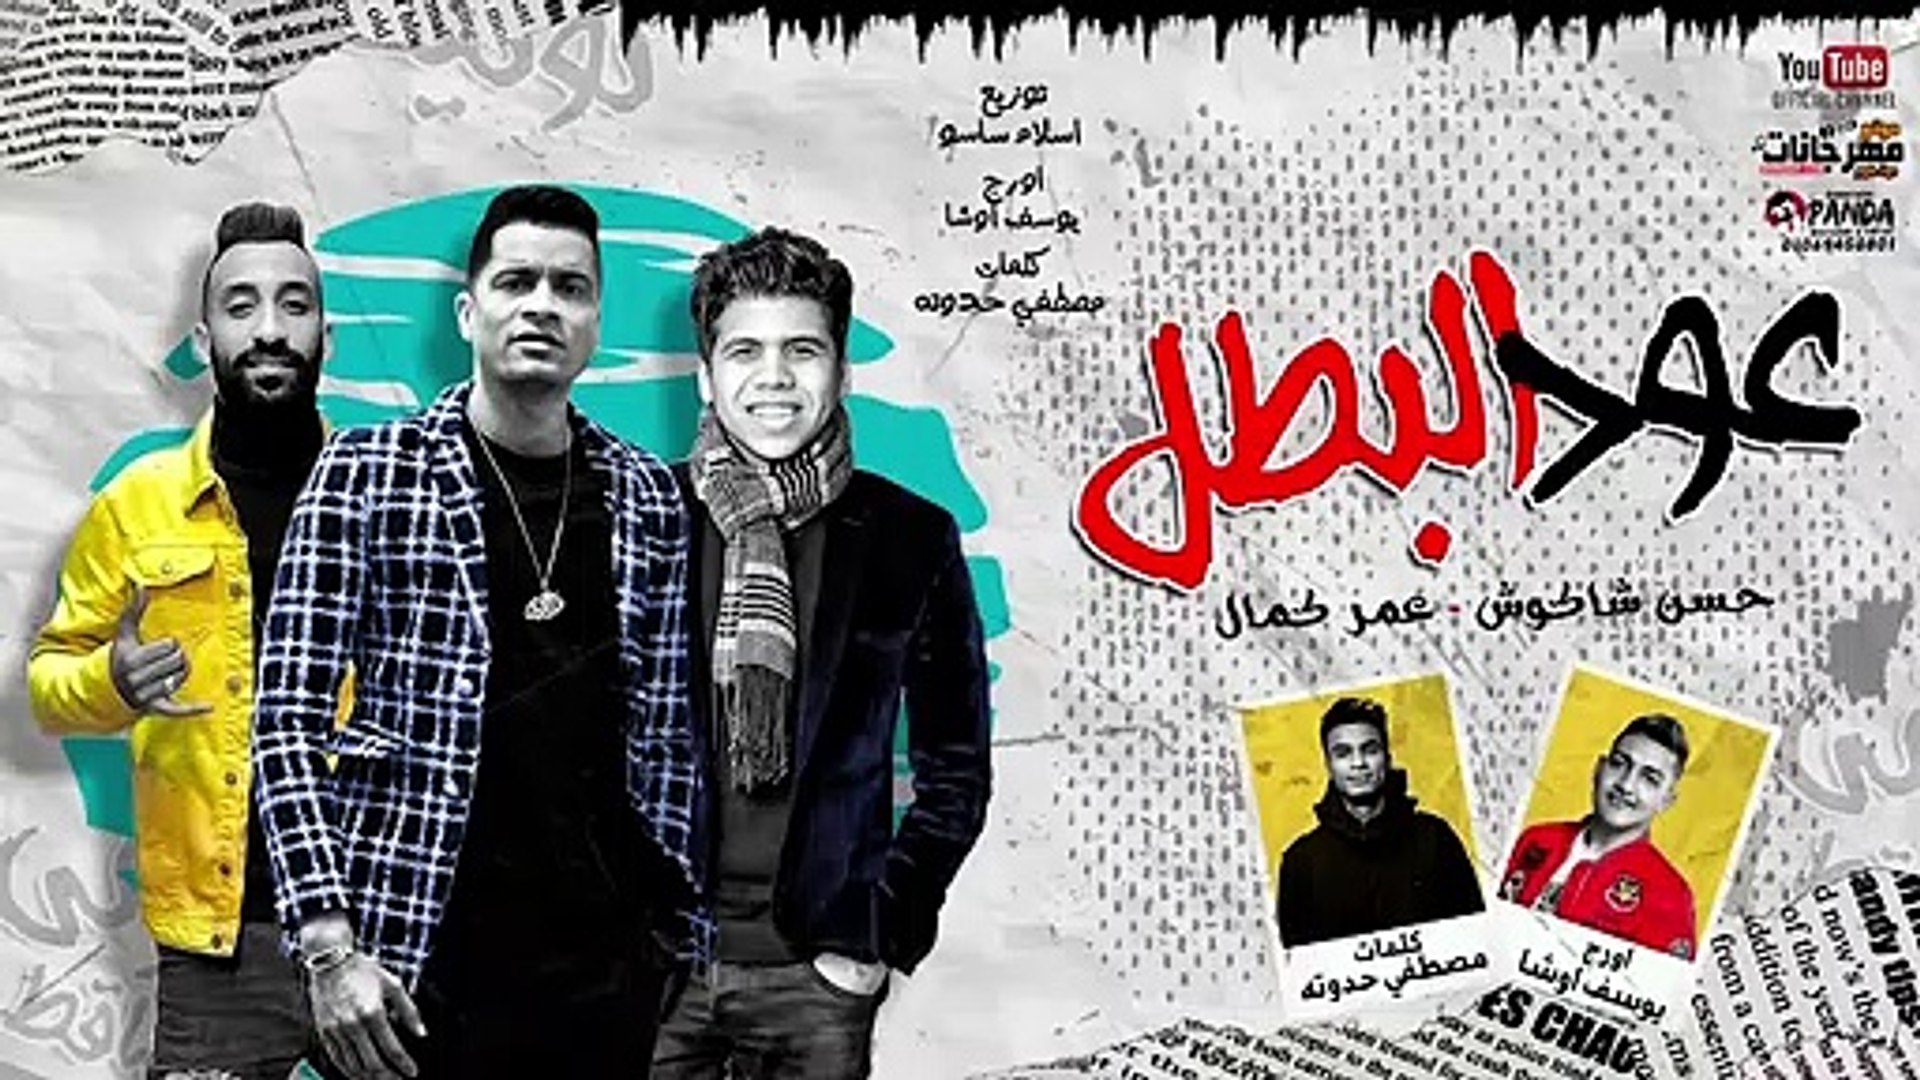 مهرجان ' عود البطل ملفوف ' حسن شاكوش و عمر كمال - توزيع اسلام ساسو 2020 -  فيديو Dailymotion